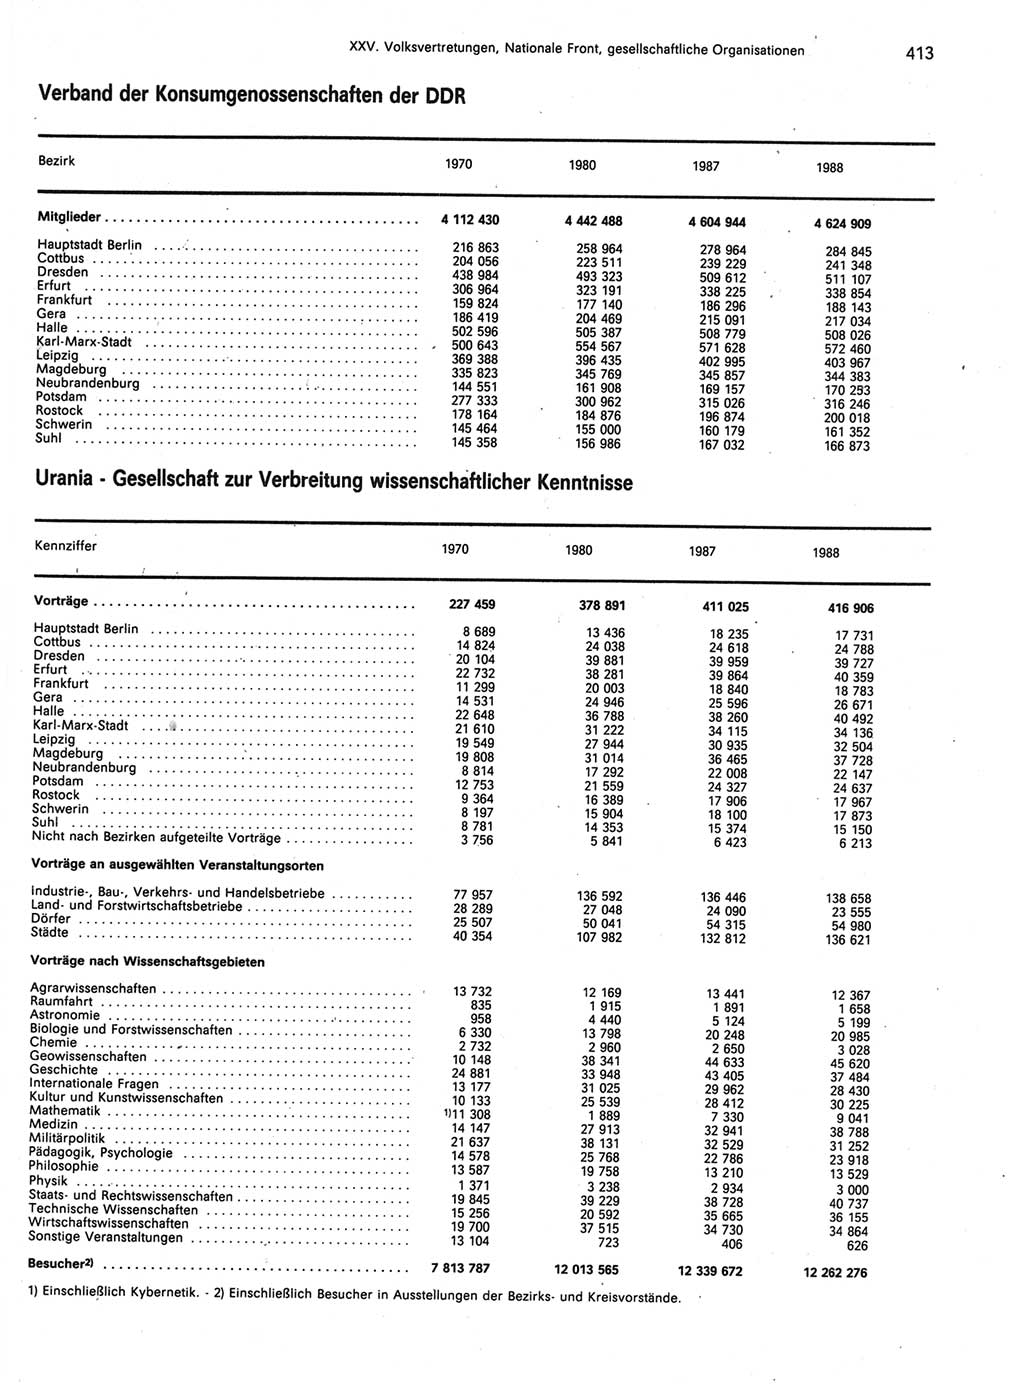 Statistisches Jahrbuch der Deutschen Demokratischen Republik (DDR) 1989, Seite 413 (Stat. Jb. DDR 1989, S. 413)